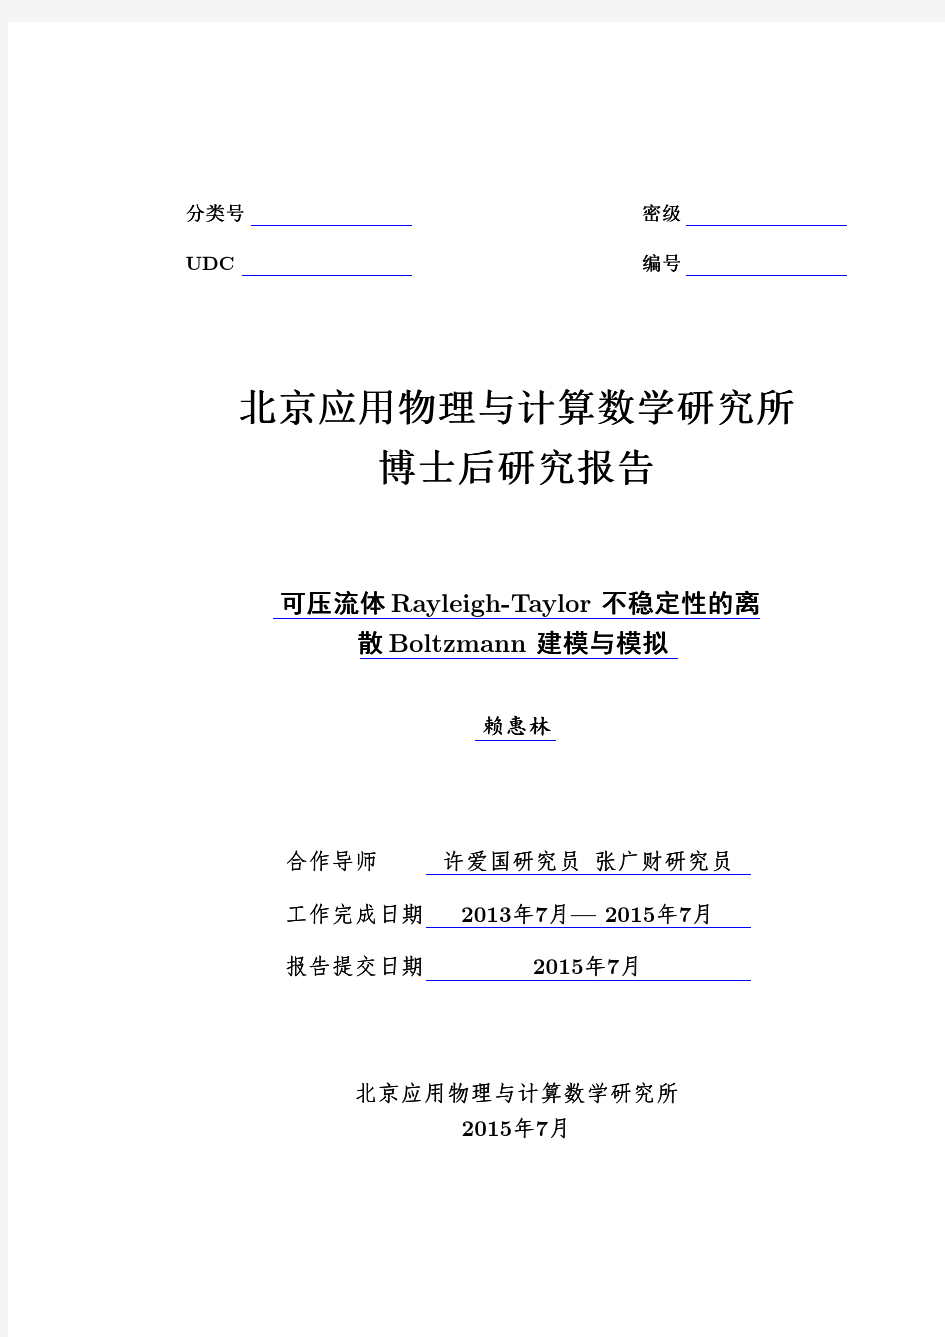 赖惠林-北京应用物理与计算数学研究所博士后出站报告-2015年7月